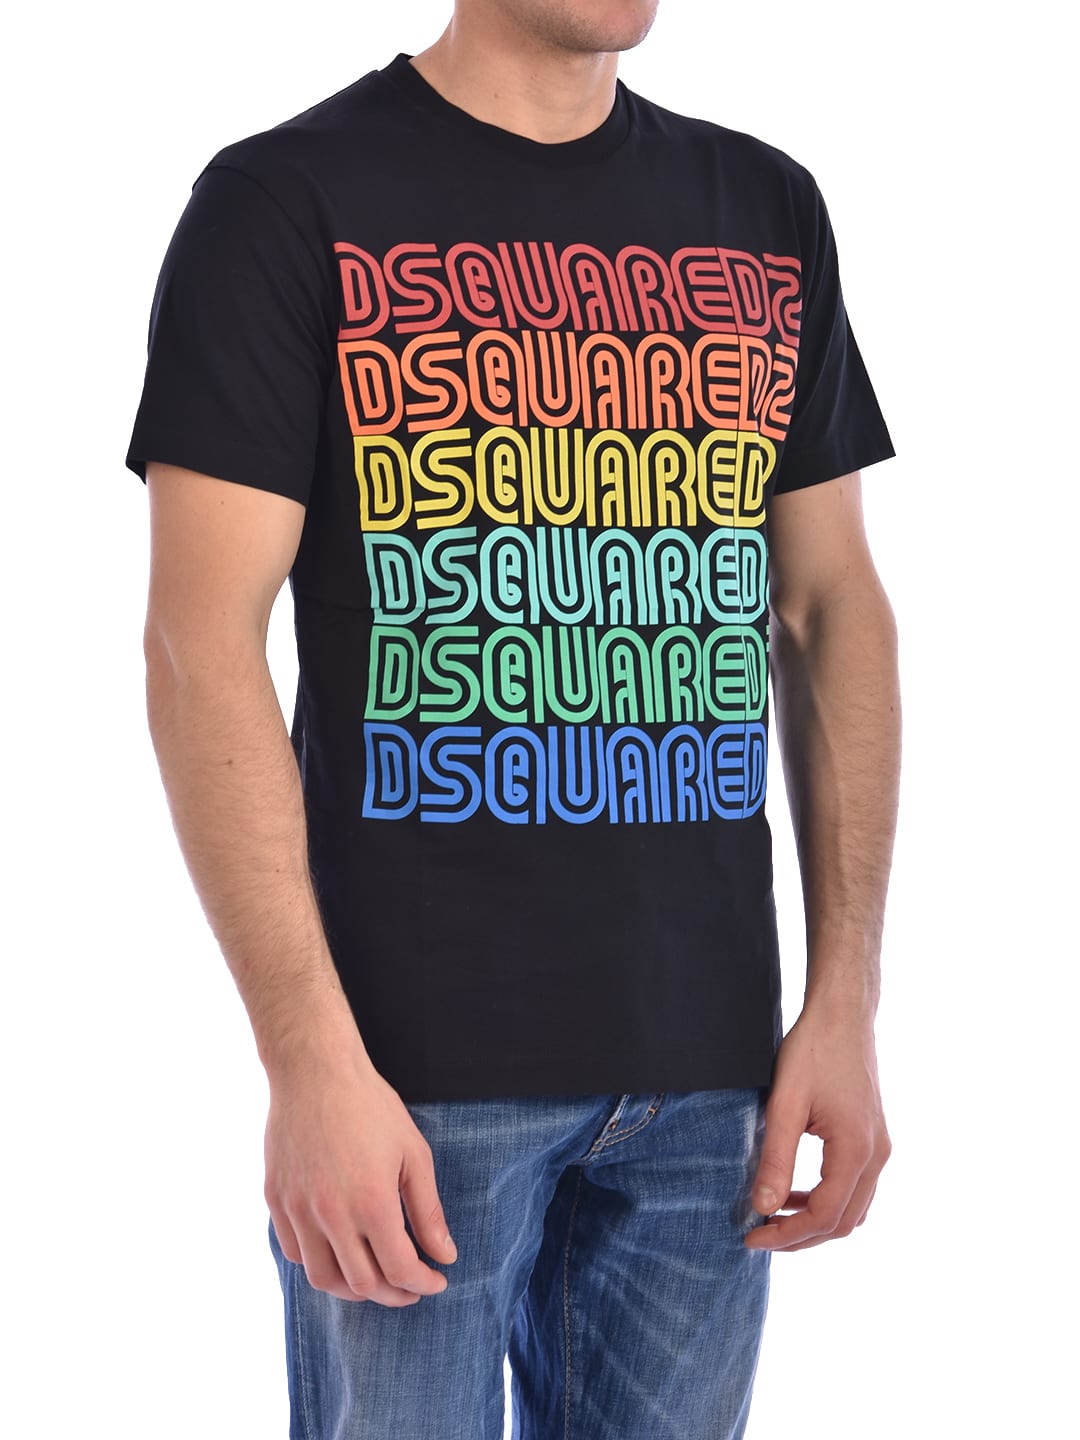 dsquared t-shirt sale